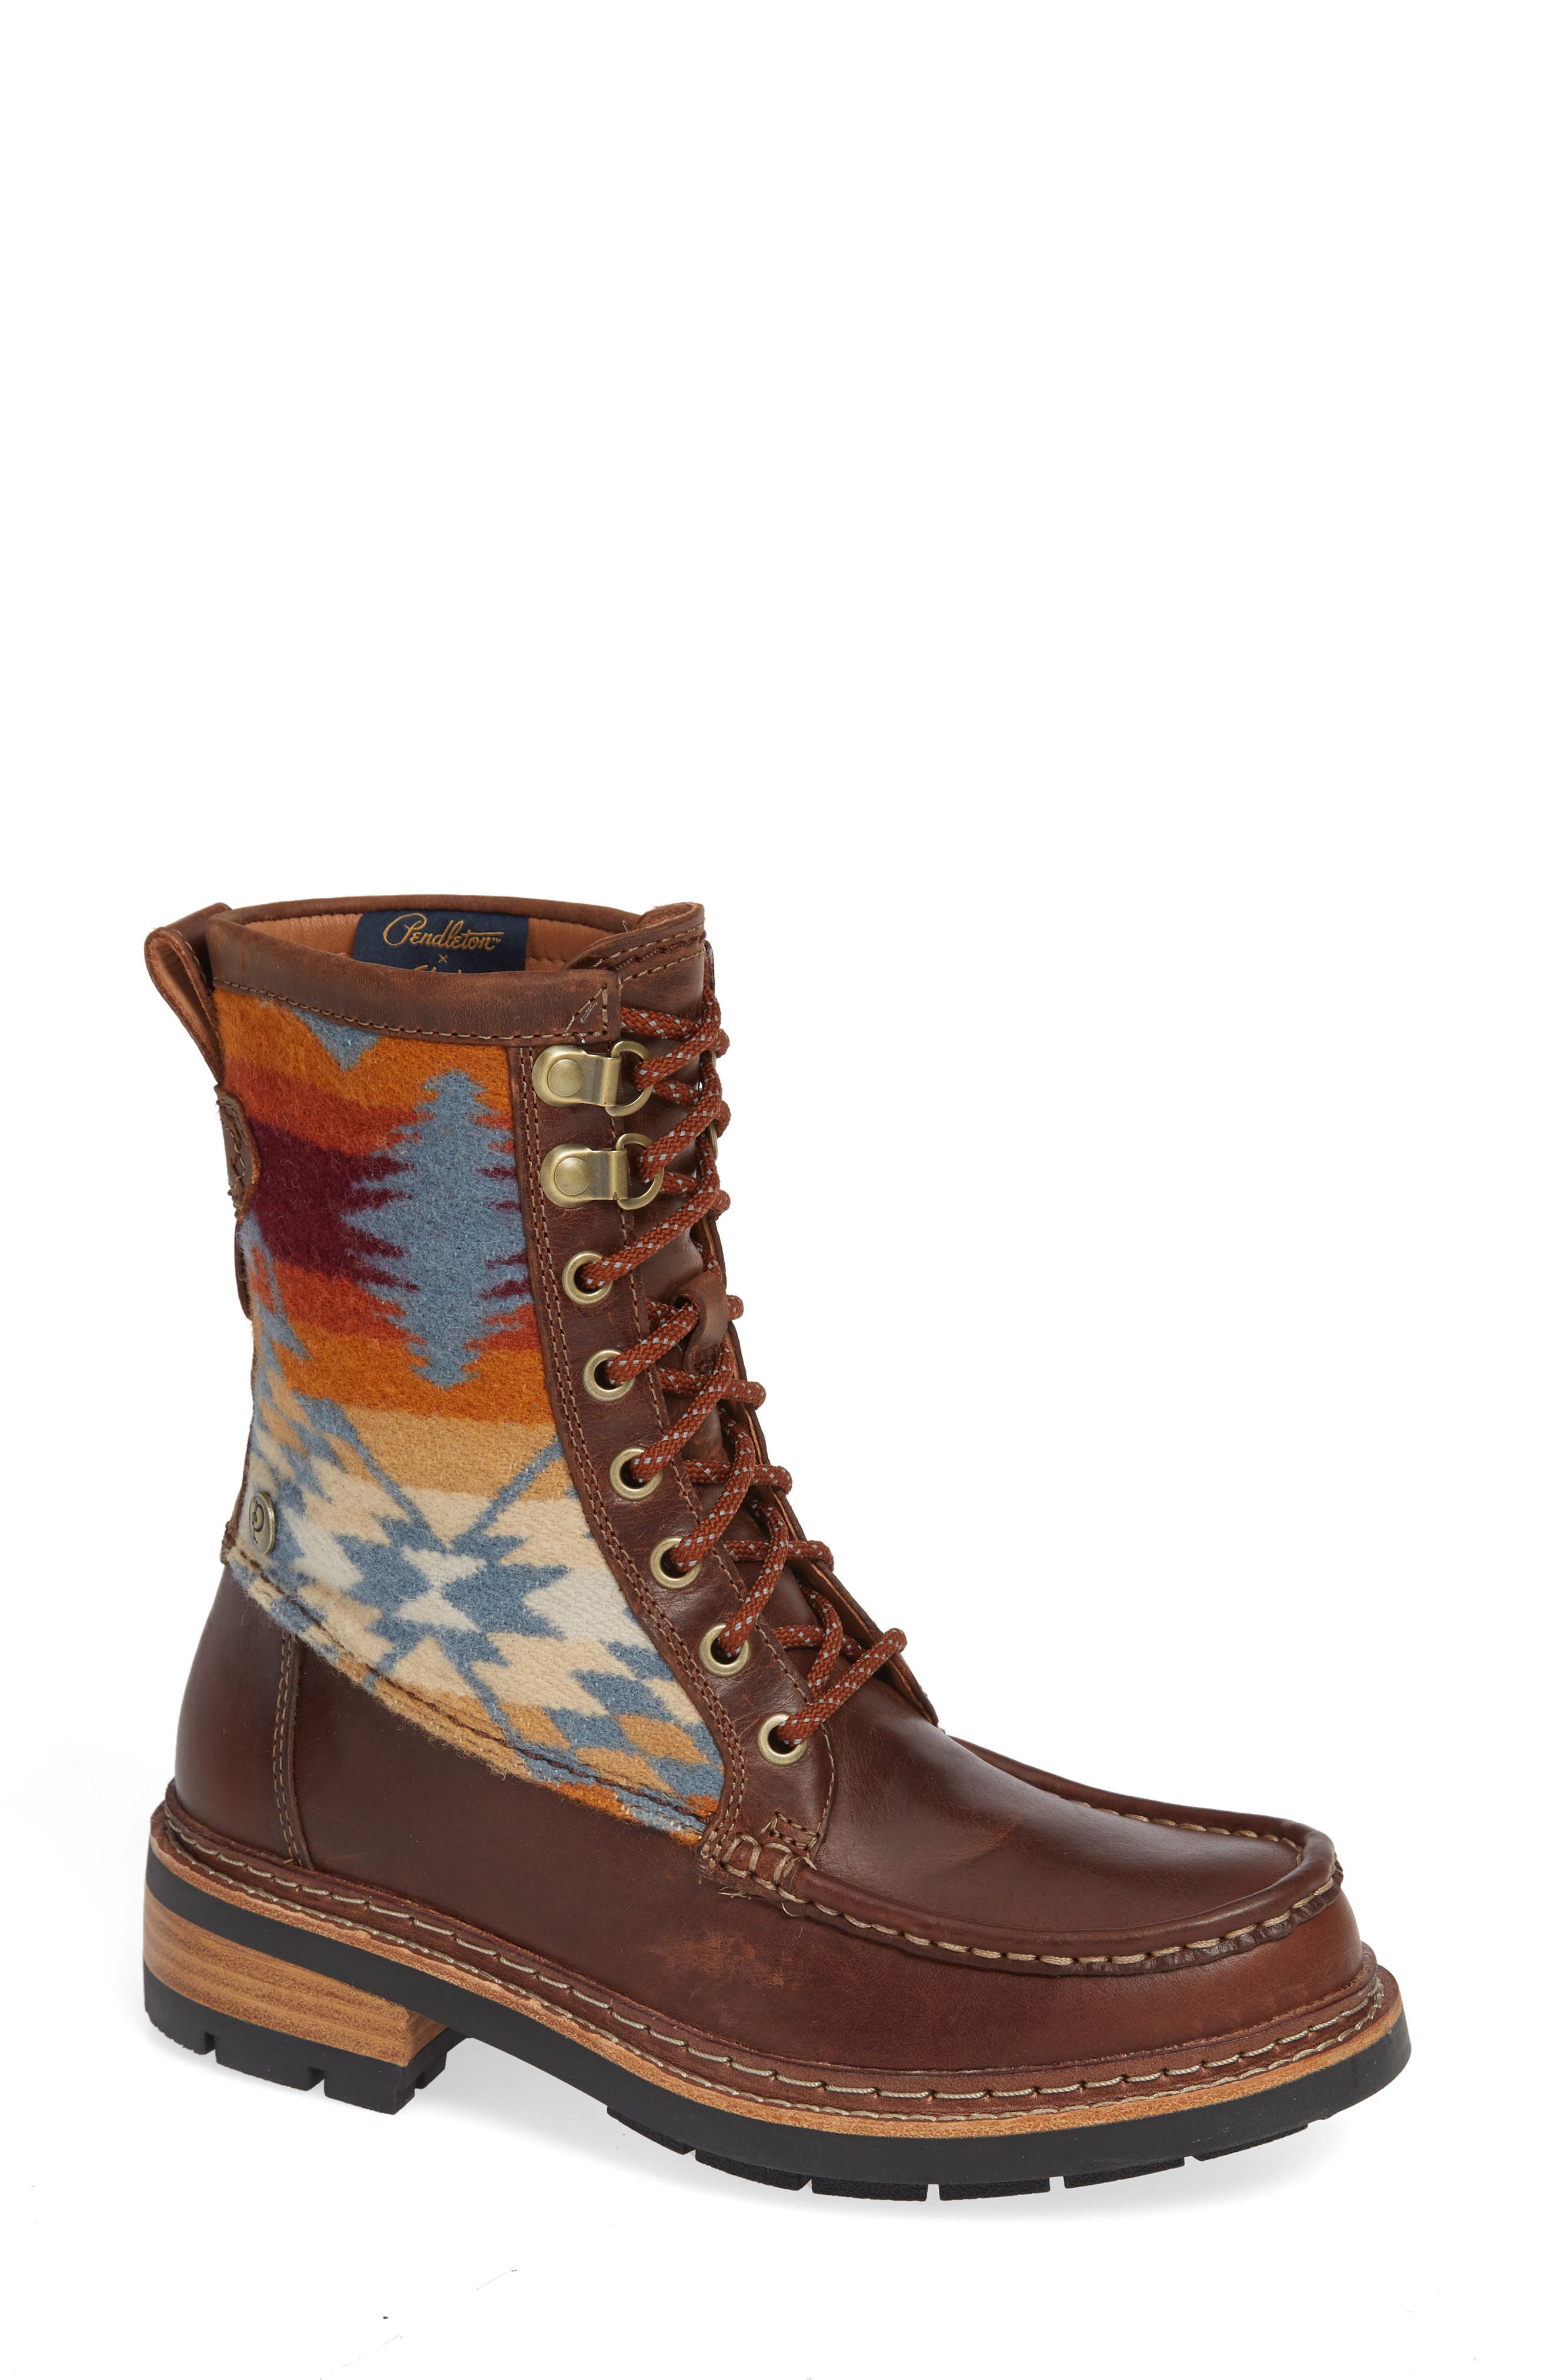 clarks pendleton ottawa boots